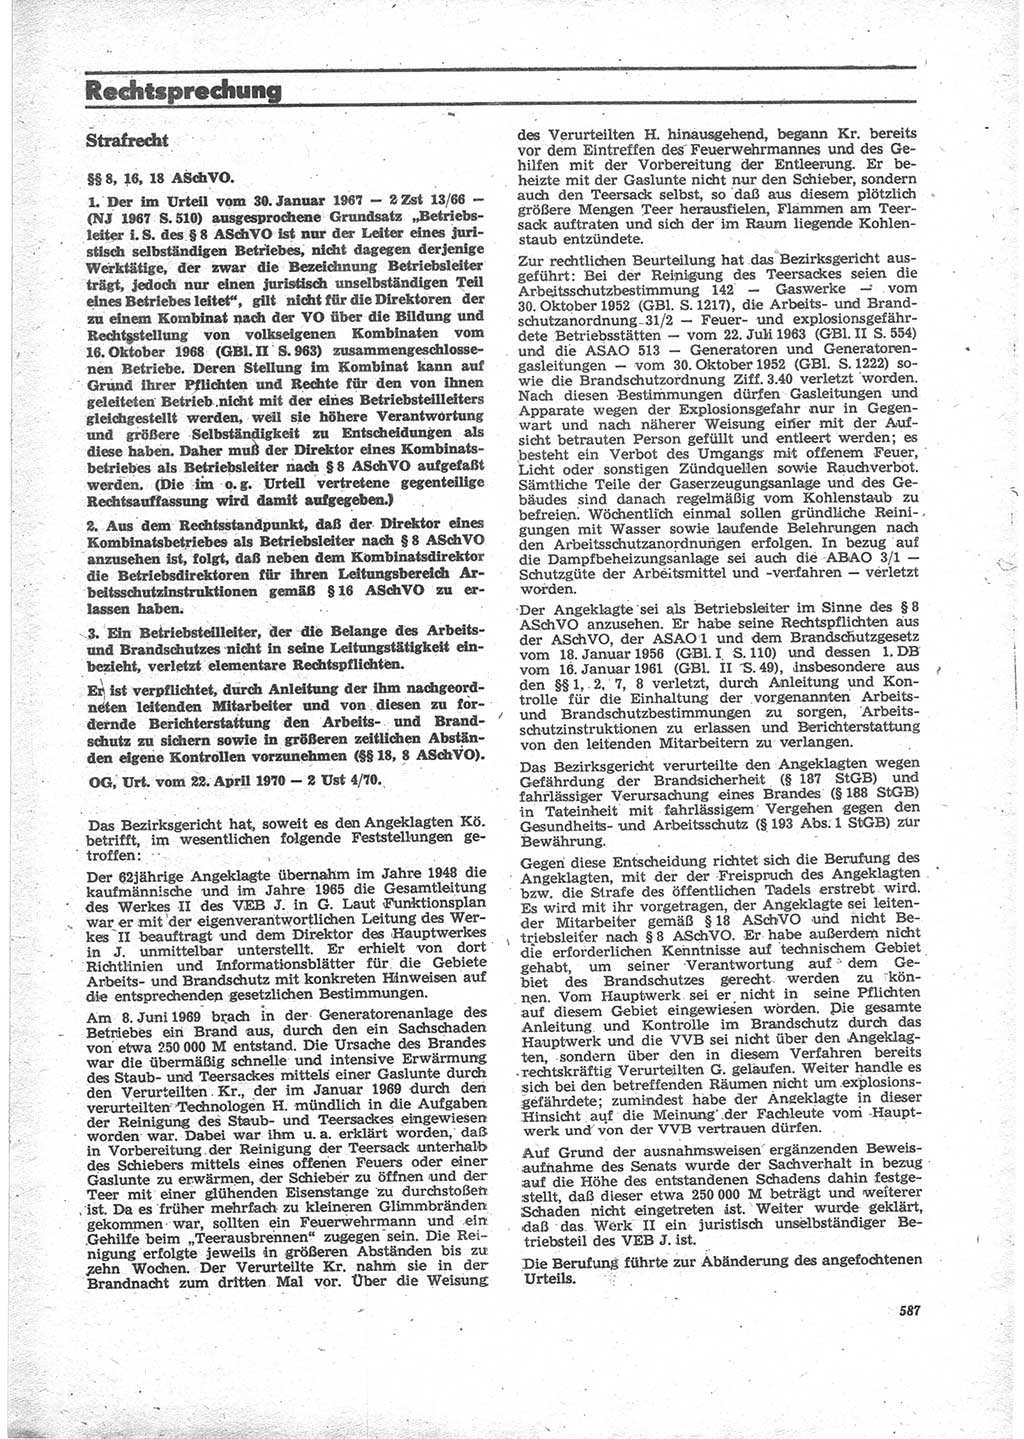 Neue Justiz (NJ), Zeitschrift für Recht und Rechtswissenschaft [Deutsche Demokratische Republik (DDR)], 24. Jahrgang 1970, Seite 587 (NJ DDR 1970, S. 587)